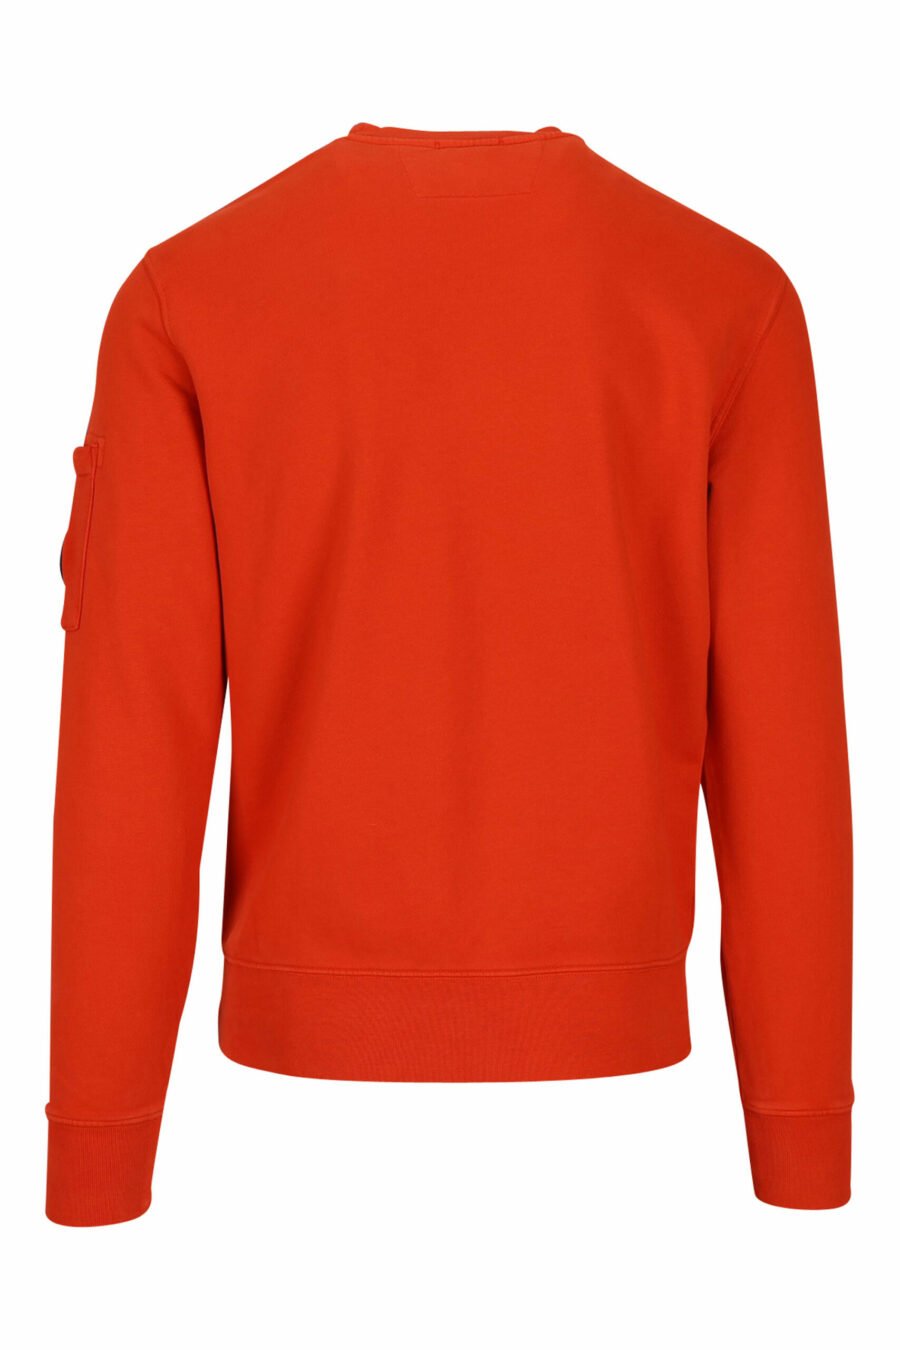 Orangefarbenes Sweatshirt mit seitlichem Linsenlogo - 7620943598254 2 skaliert